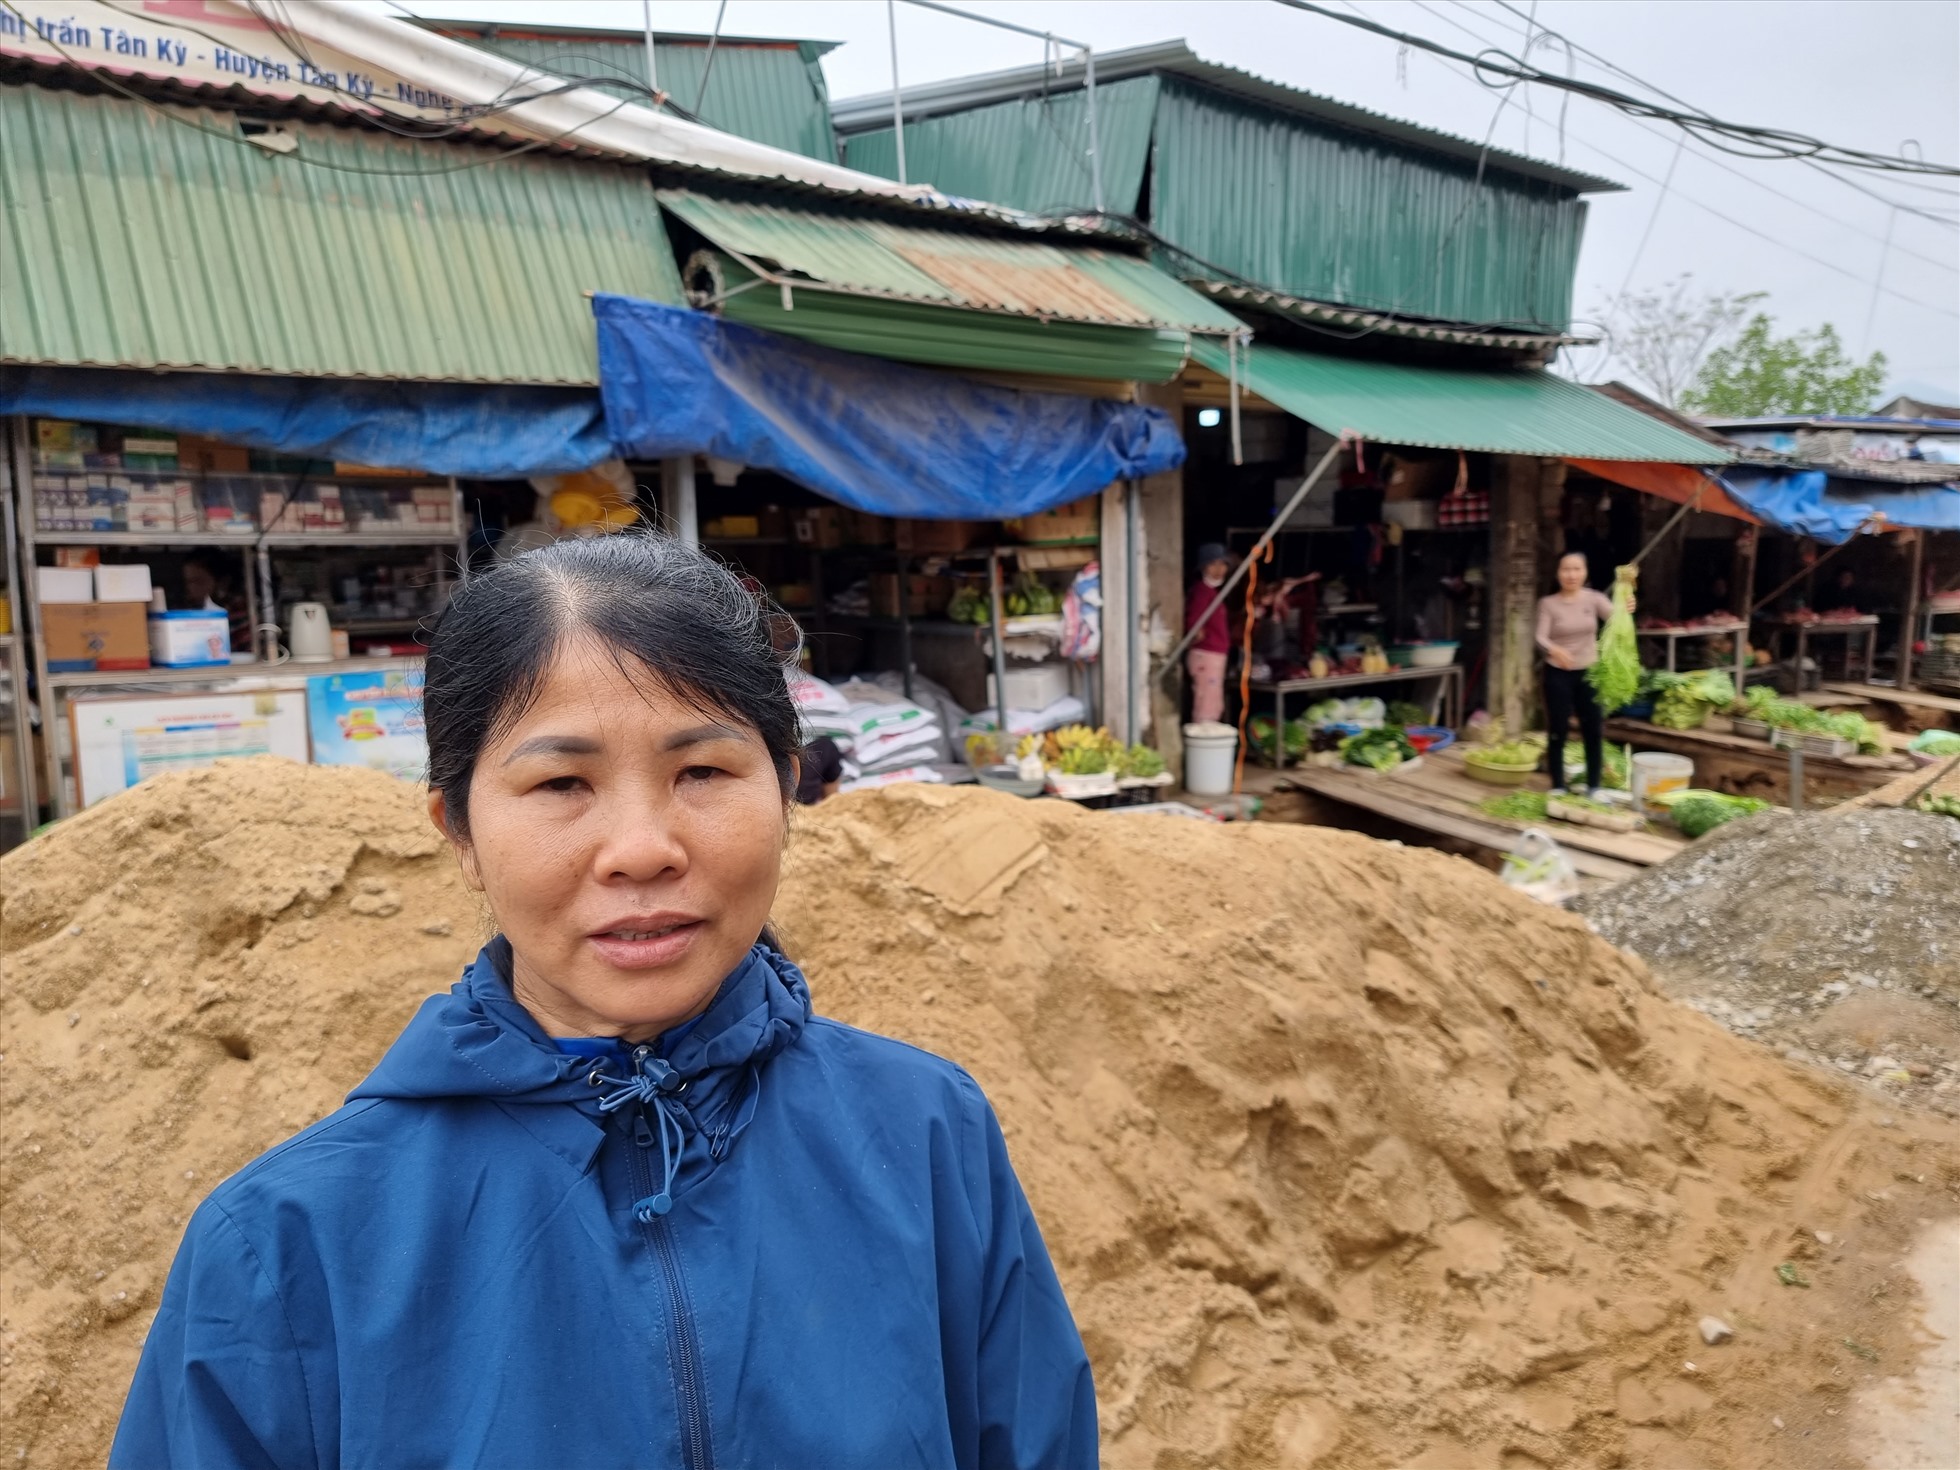 Bà Nguyễn Thị Nhiên (47 tuổi), tiểu thương kinh doanh tại đường Nguyễn Xuân Ôn bức xúc vì việc kinh doanh bị địa phương gây khó dễ. Ảnh: Quang Đại